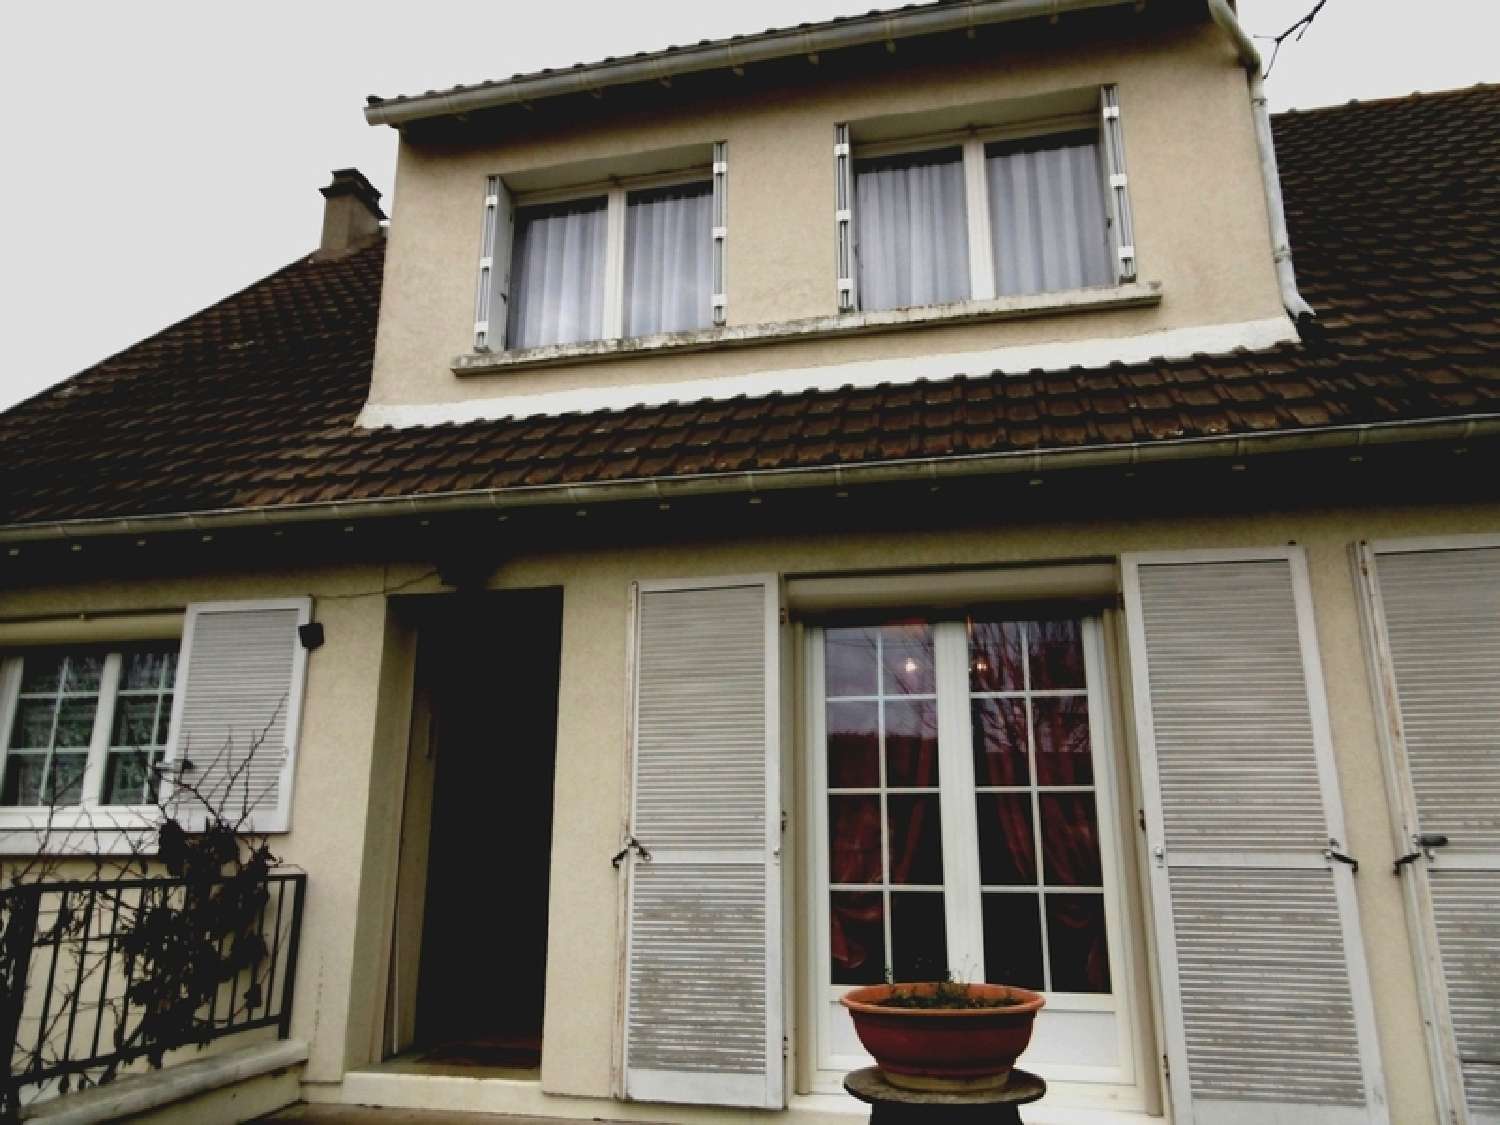  à vendre maison Saint-Pierre-lès-Nemours Seine-et-Marne 2